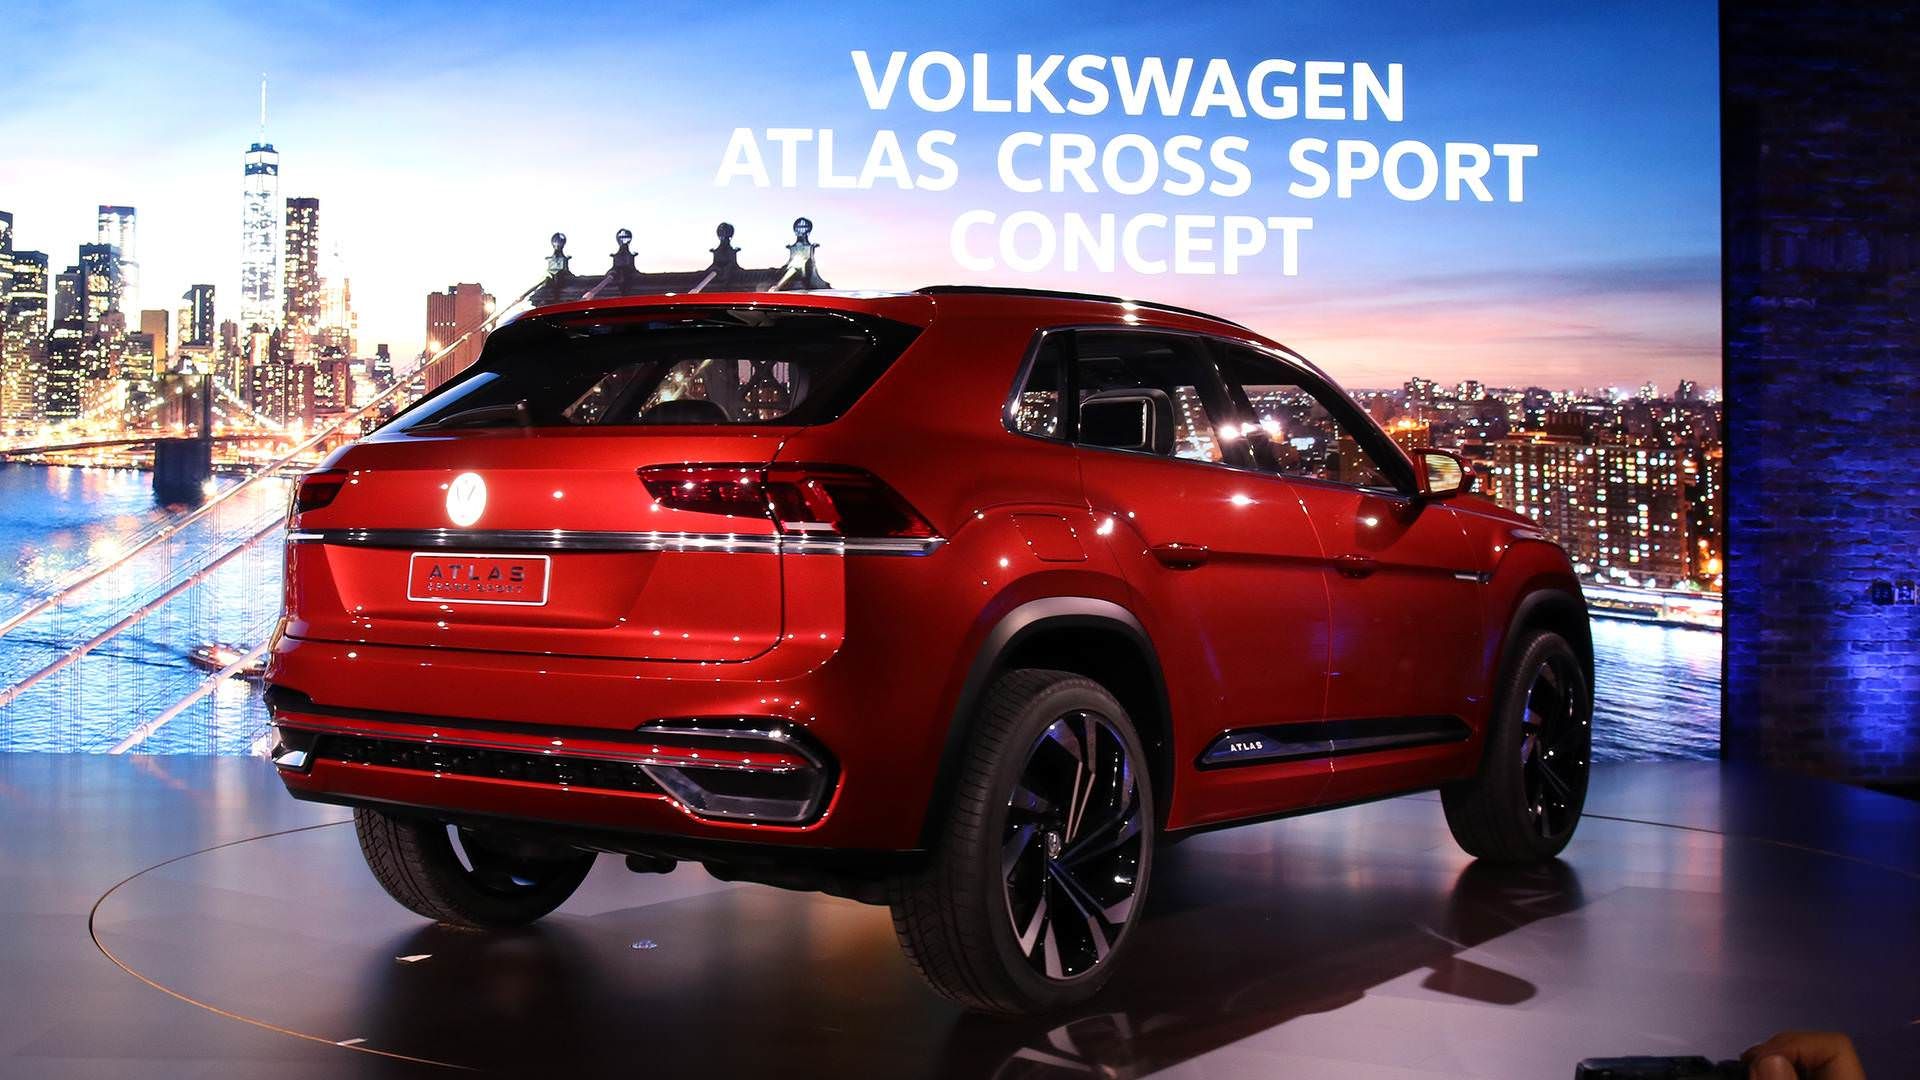 فولکس واگت اطلس کراس اسپرت / VW Atlas Cross Sport